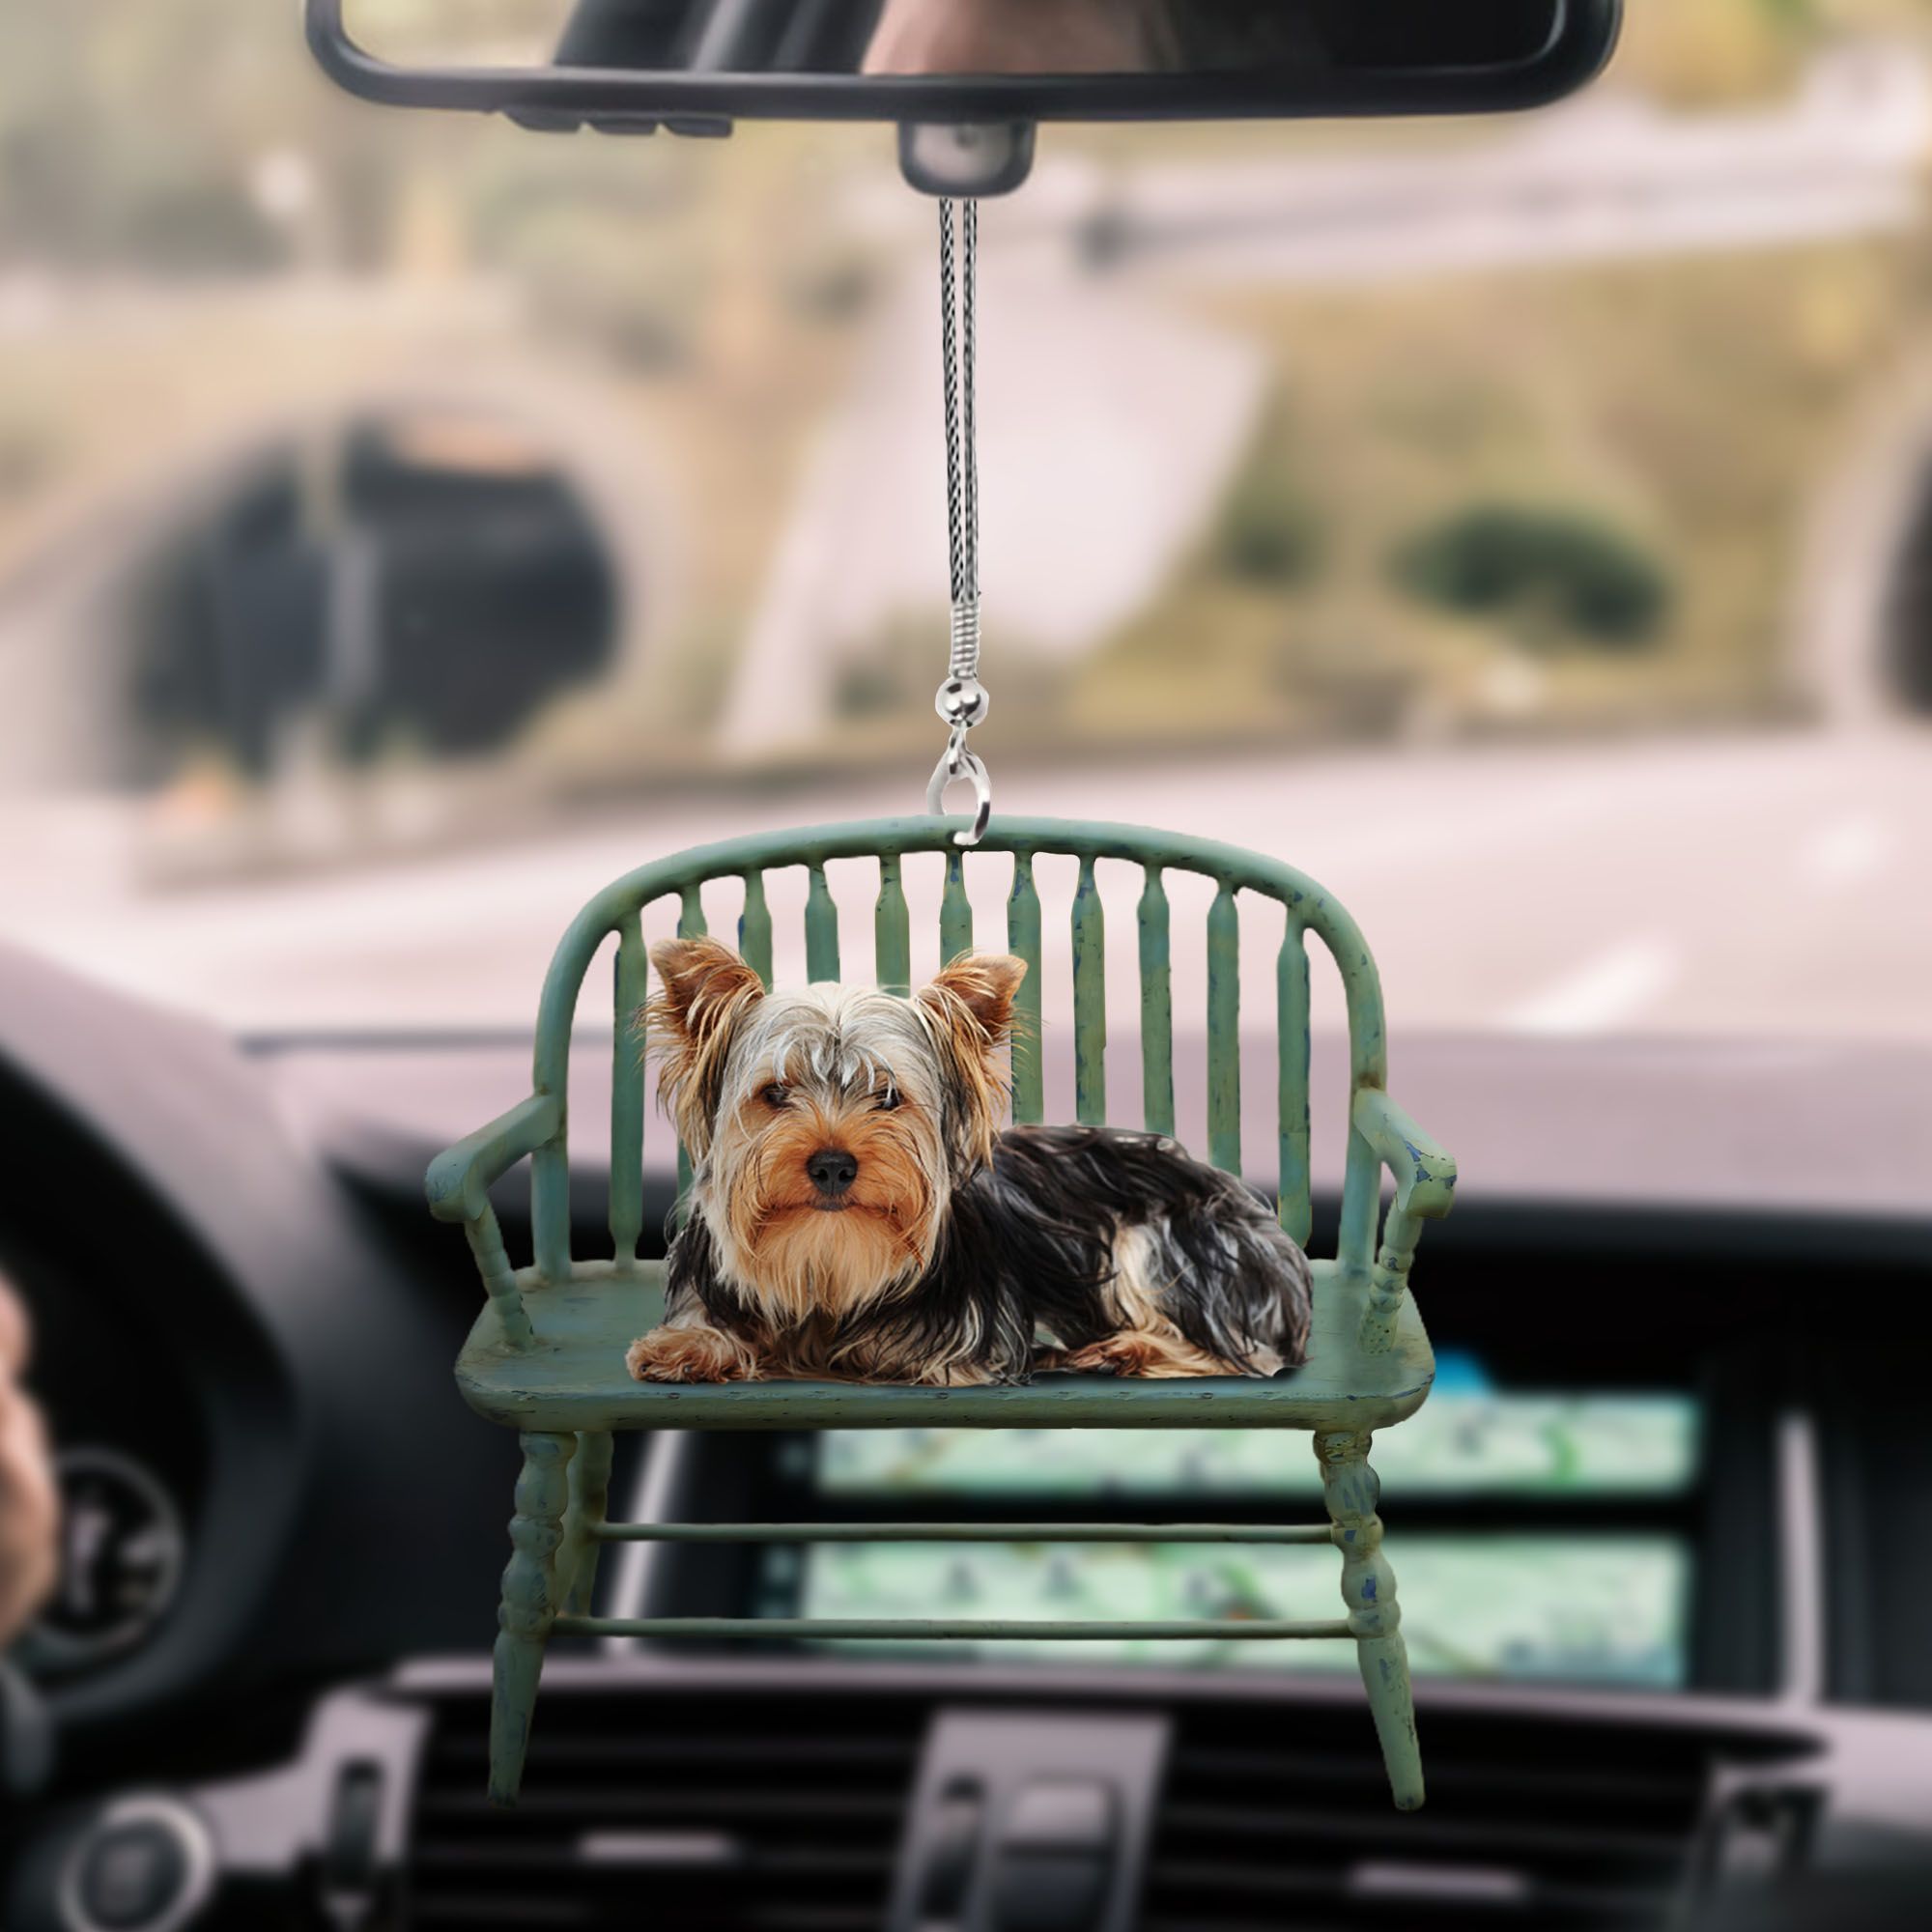 yorkshire-terrier-lying-ks112-ntt070997-nct-car-hanging-ornament